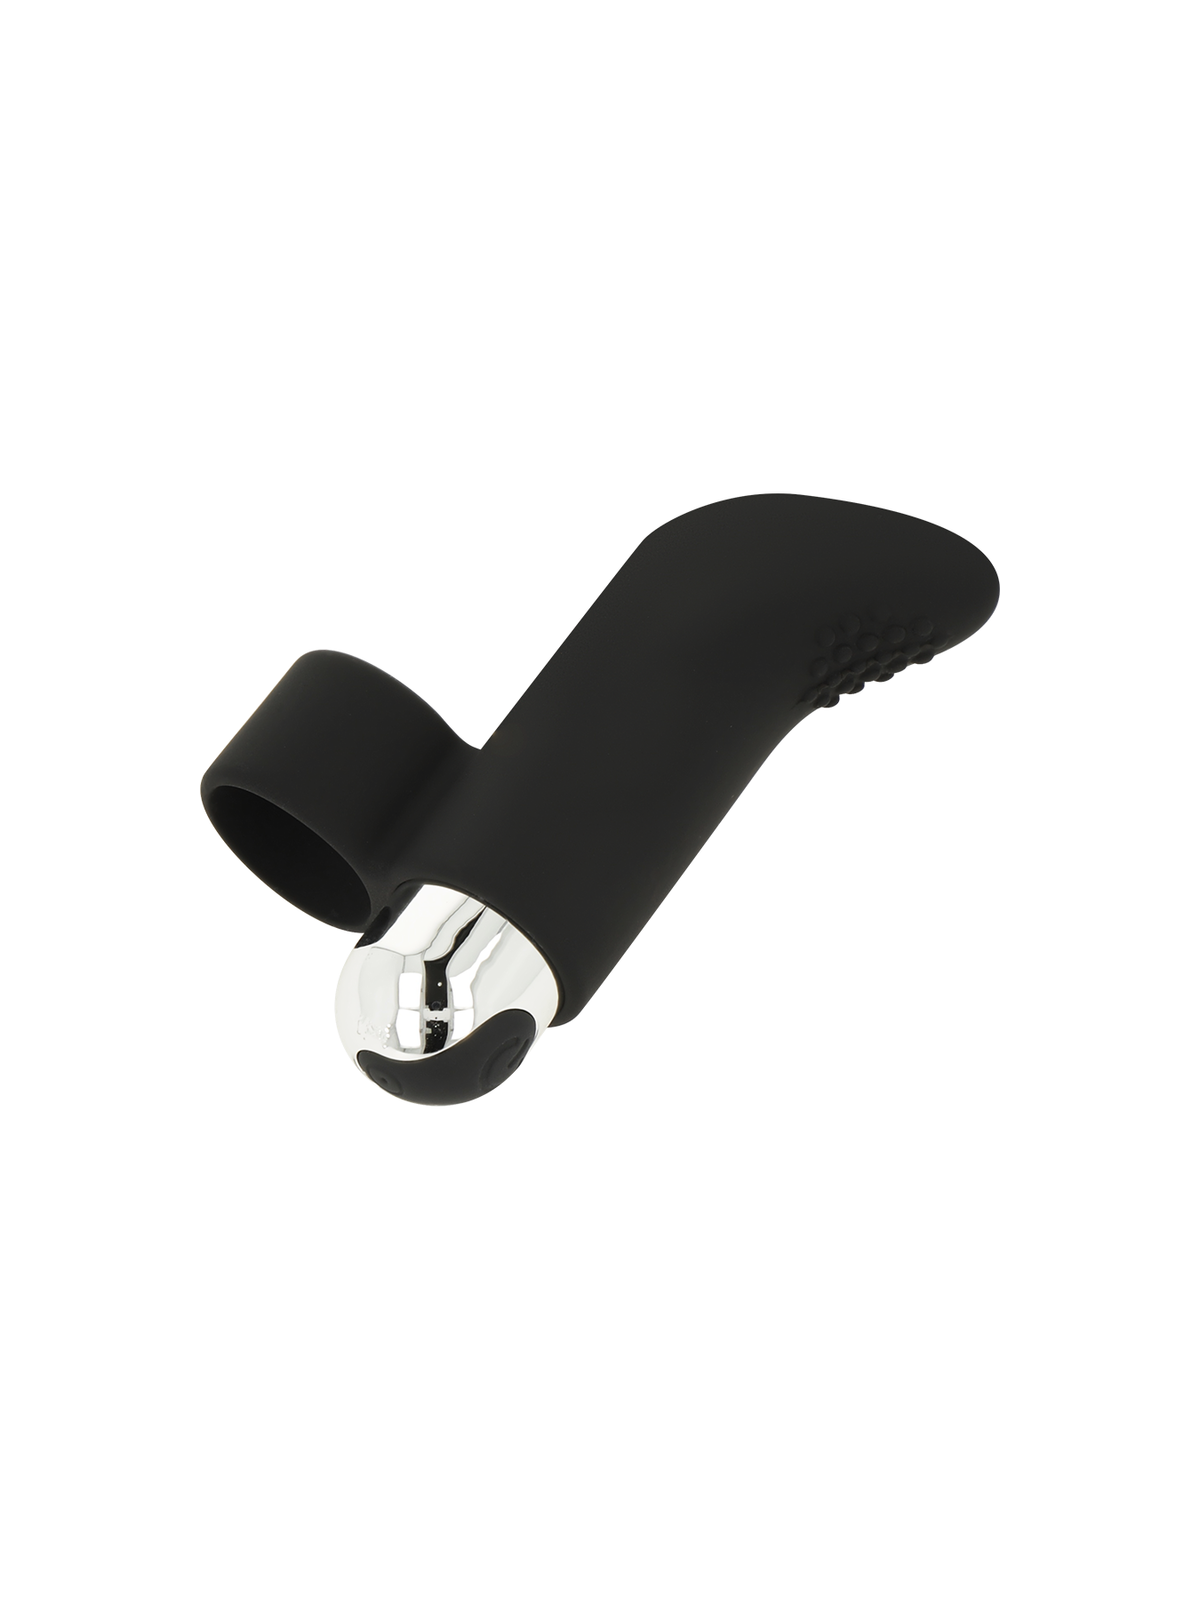 Ohmama Dedal Vibrador Texturado Recargable 8 cm Negro - Comprar Dedo vibrador Ohmama - Vibradores de dedo (1)